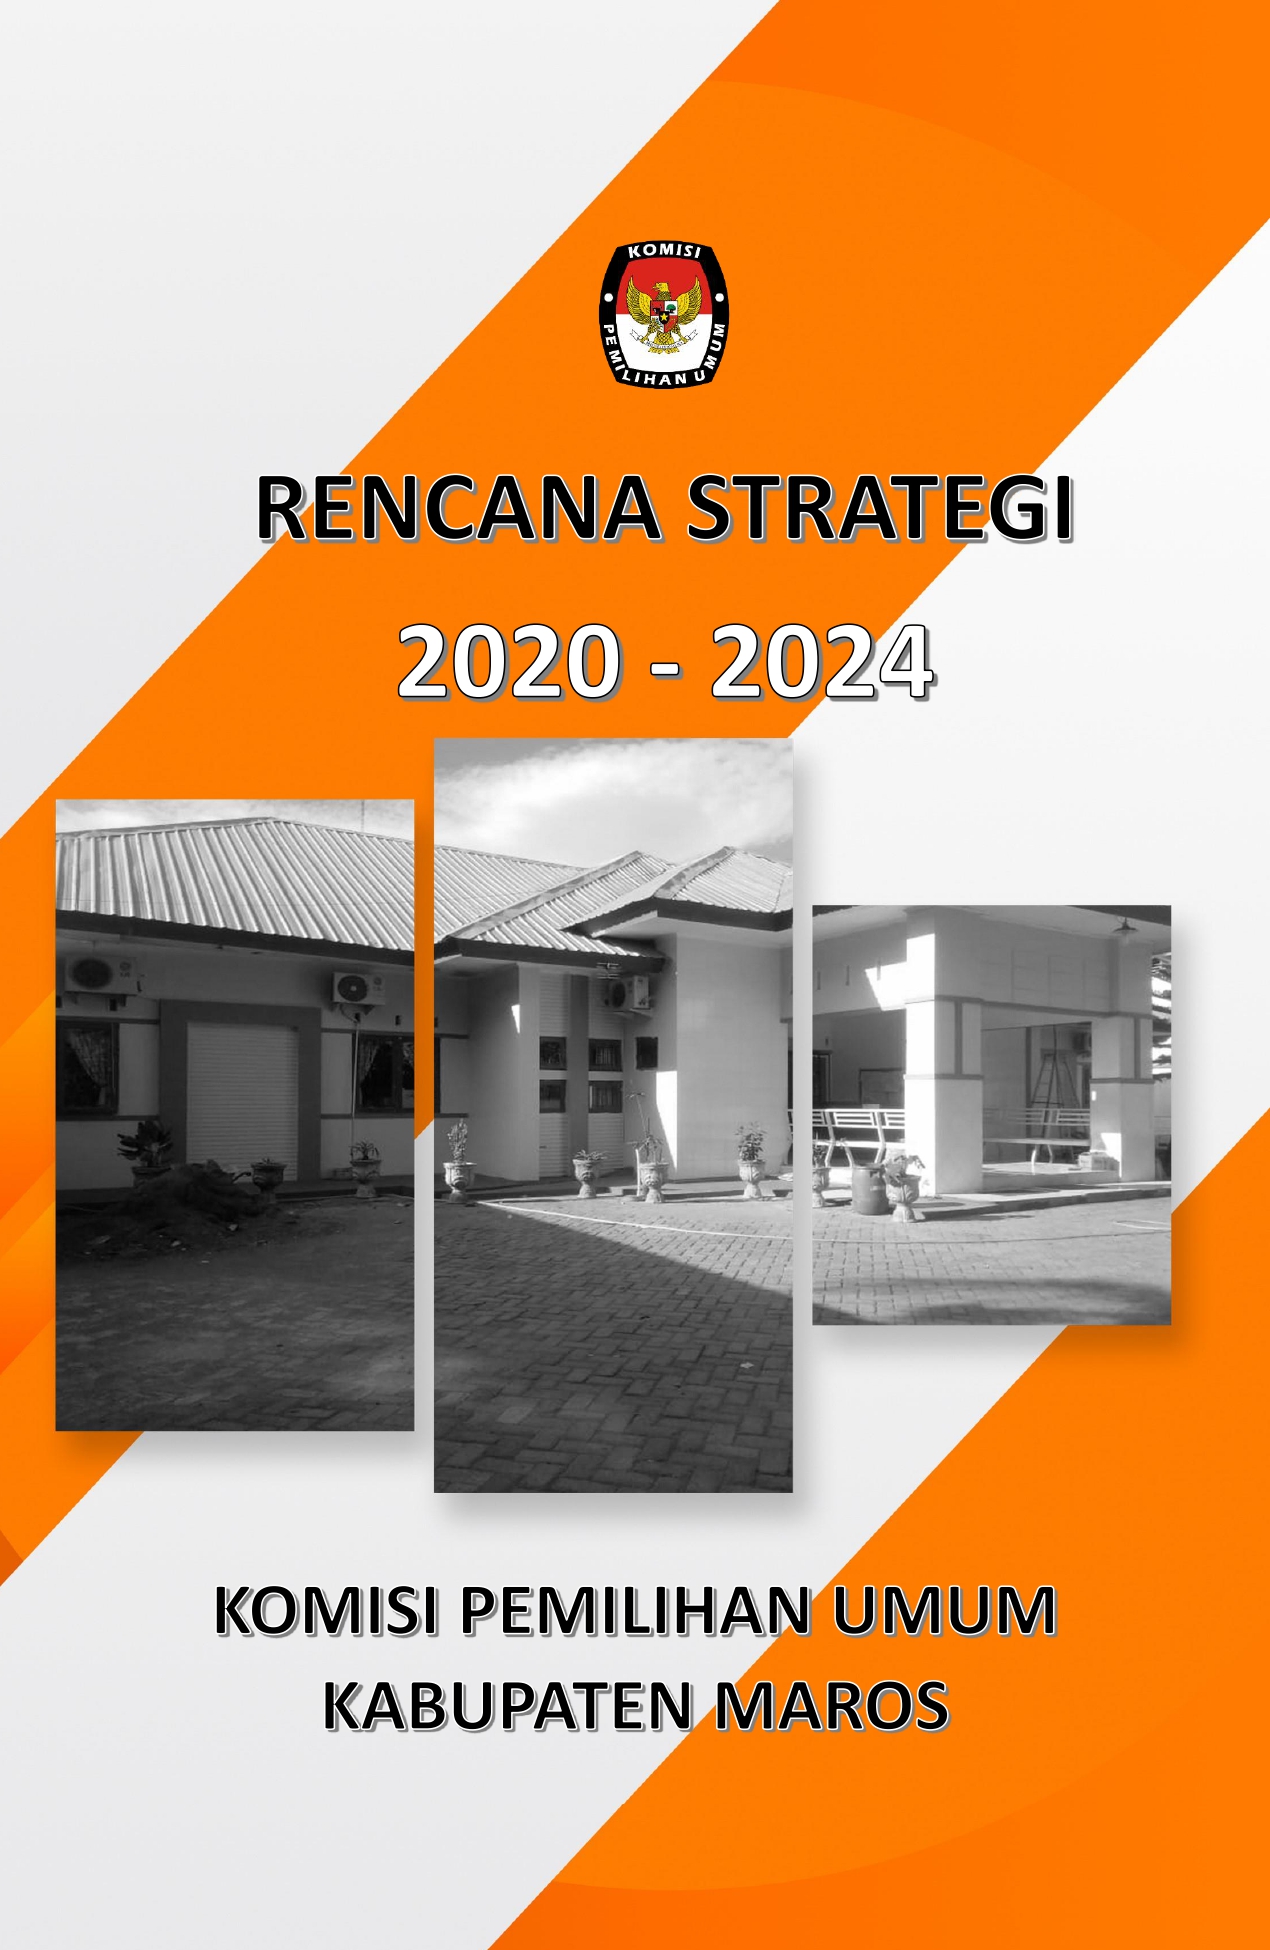 Rencana Strategi 2020 - 2024 Komisi Pemilihan Umum Kabupaten Maros